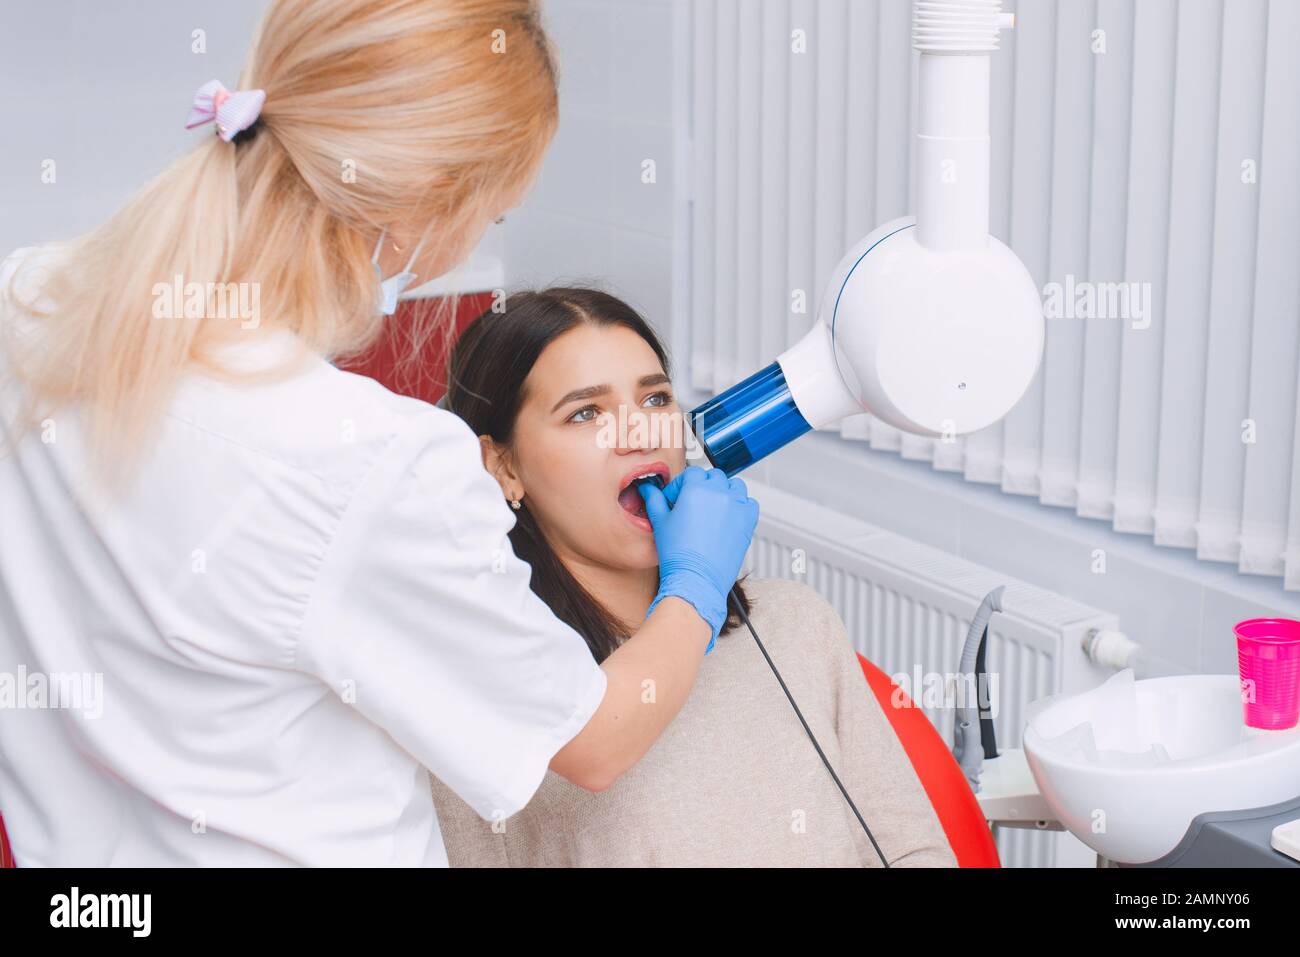 Zahn-Röntgenaufnahme im Zahnarztbüro. Junges Mädchen bei der Zahnarztverabredung. Stockfoto